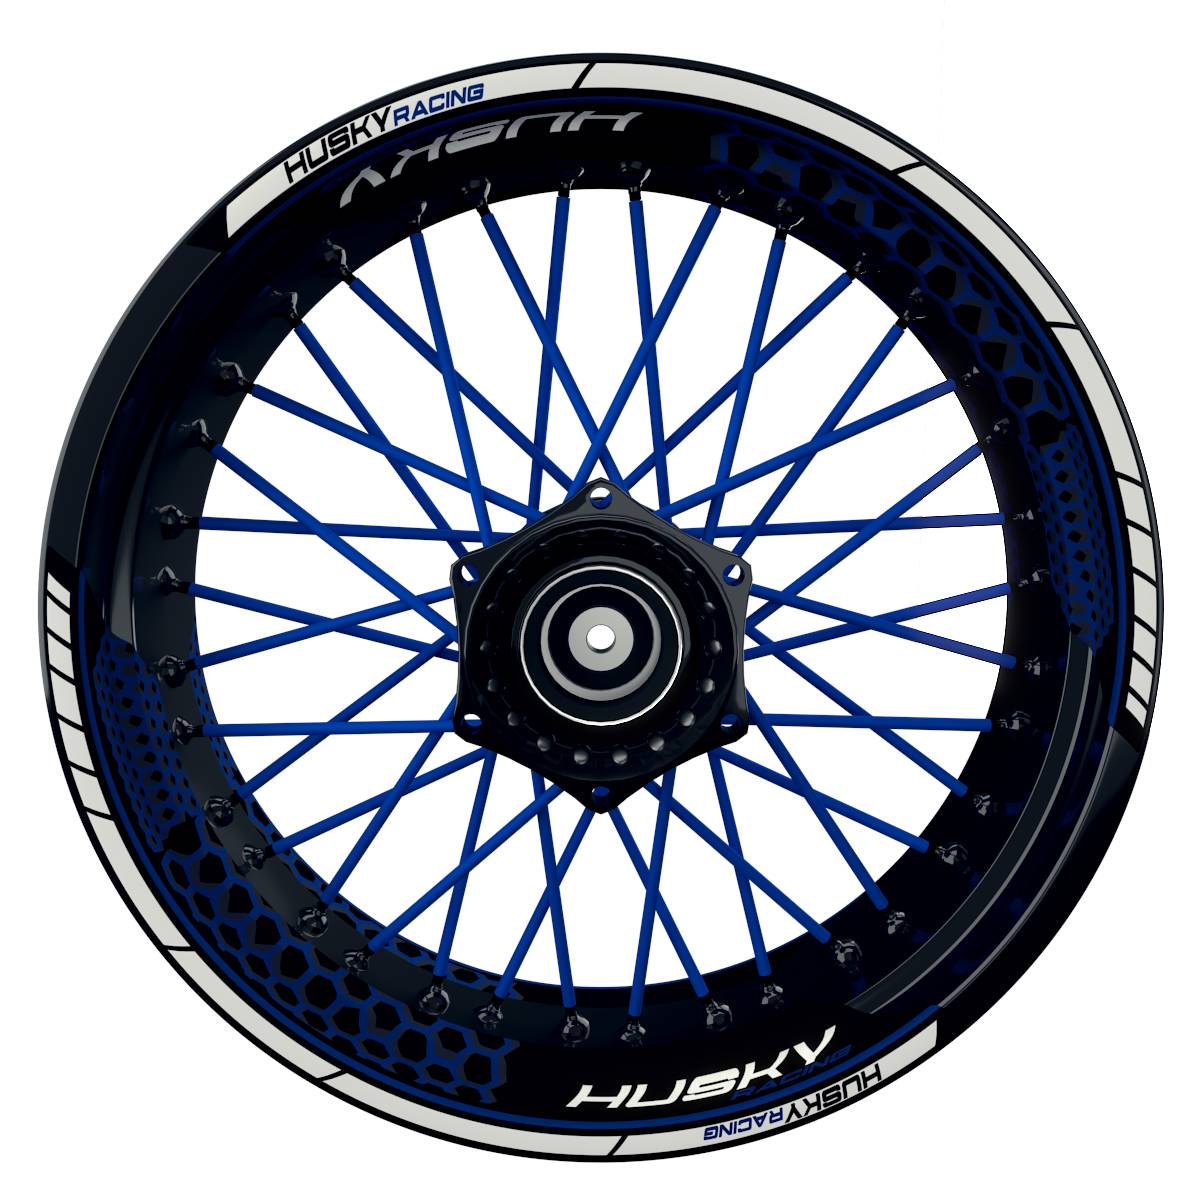 HUSKY Racing Hexagon schwarz blau Frontansicht